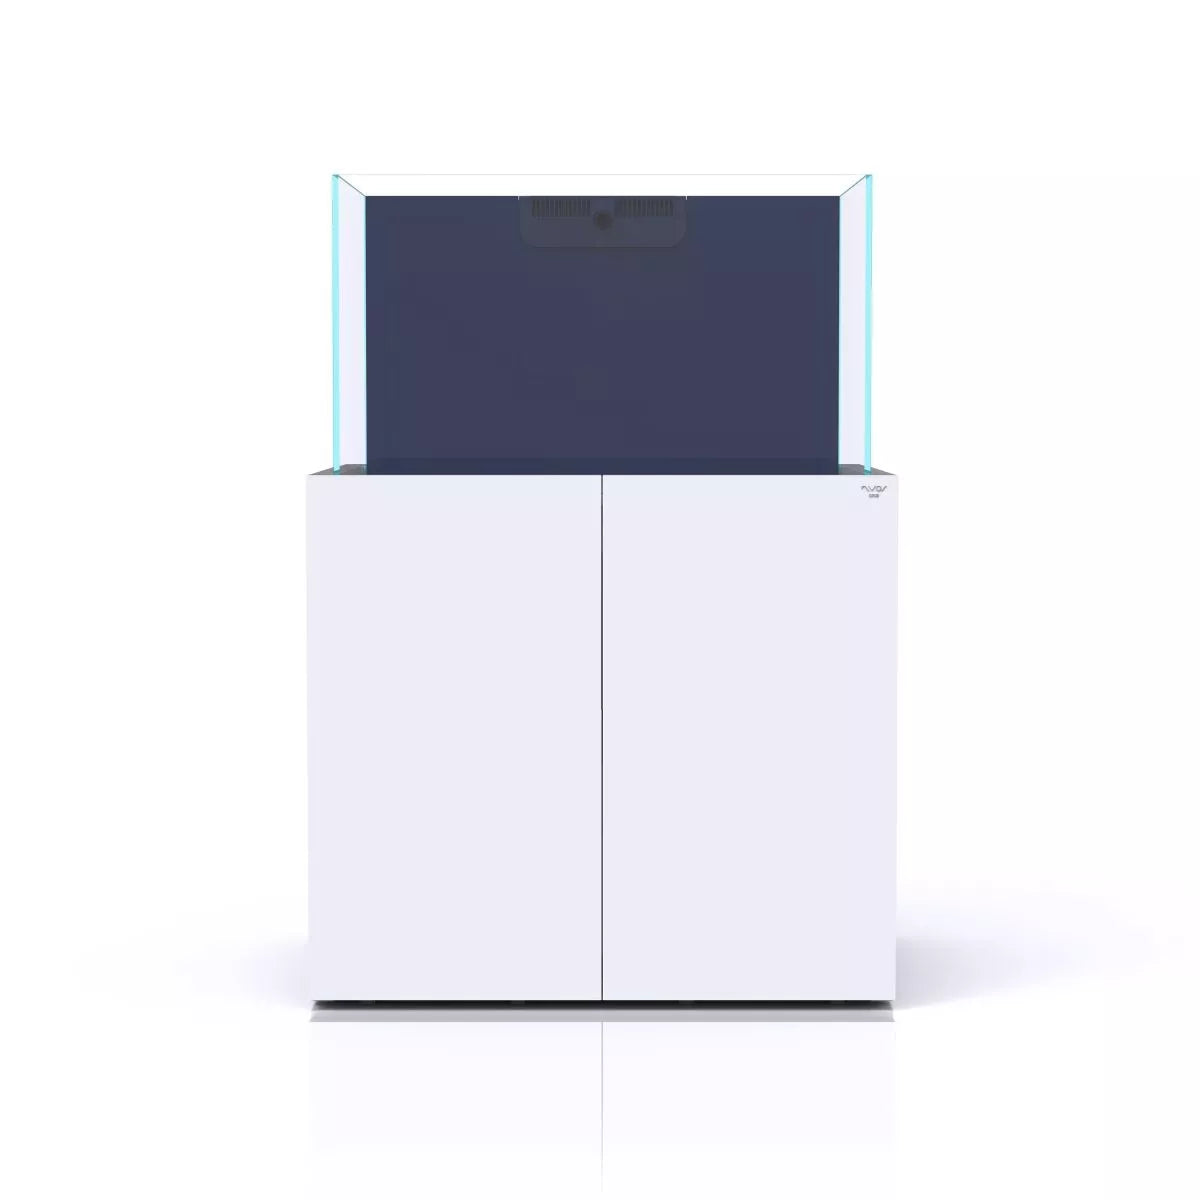 Nyos OPUS G2 300 Aquarium w/ Pro-Line Cabinet (White)